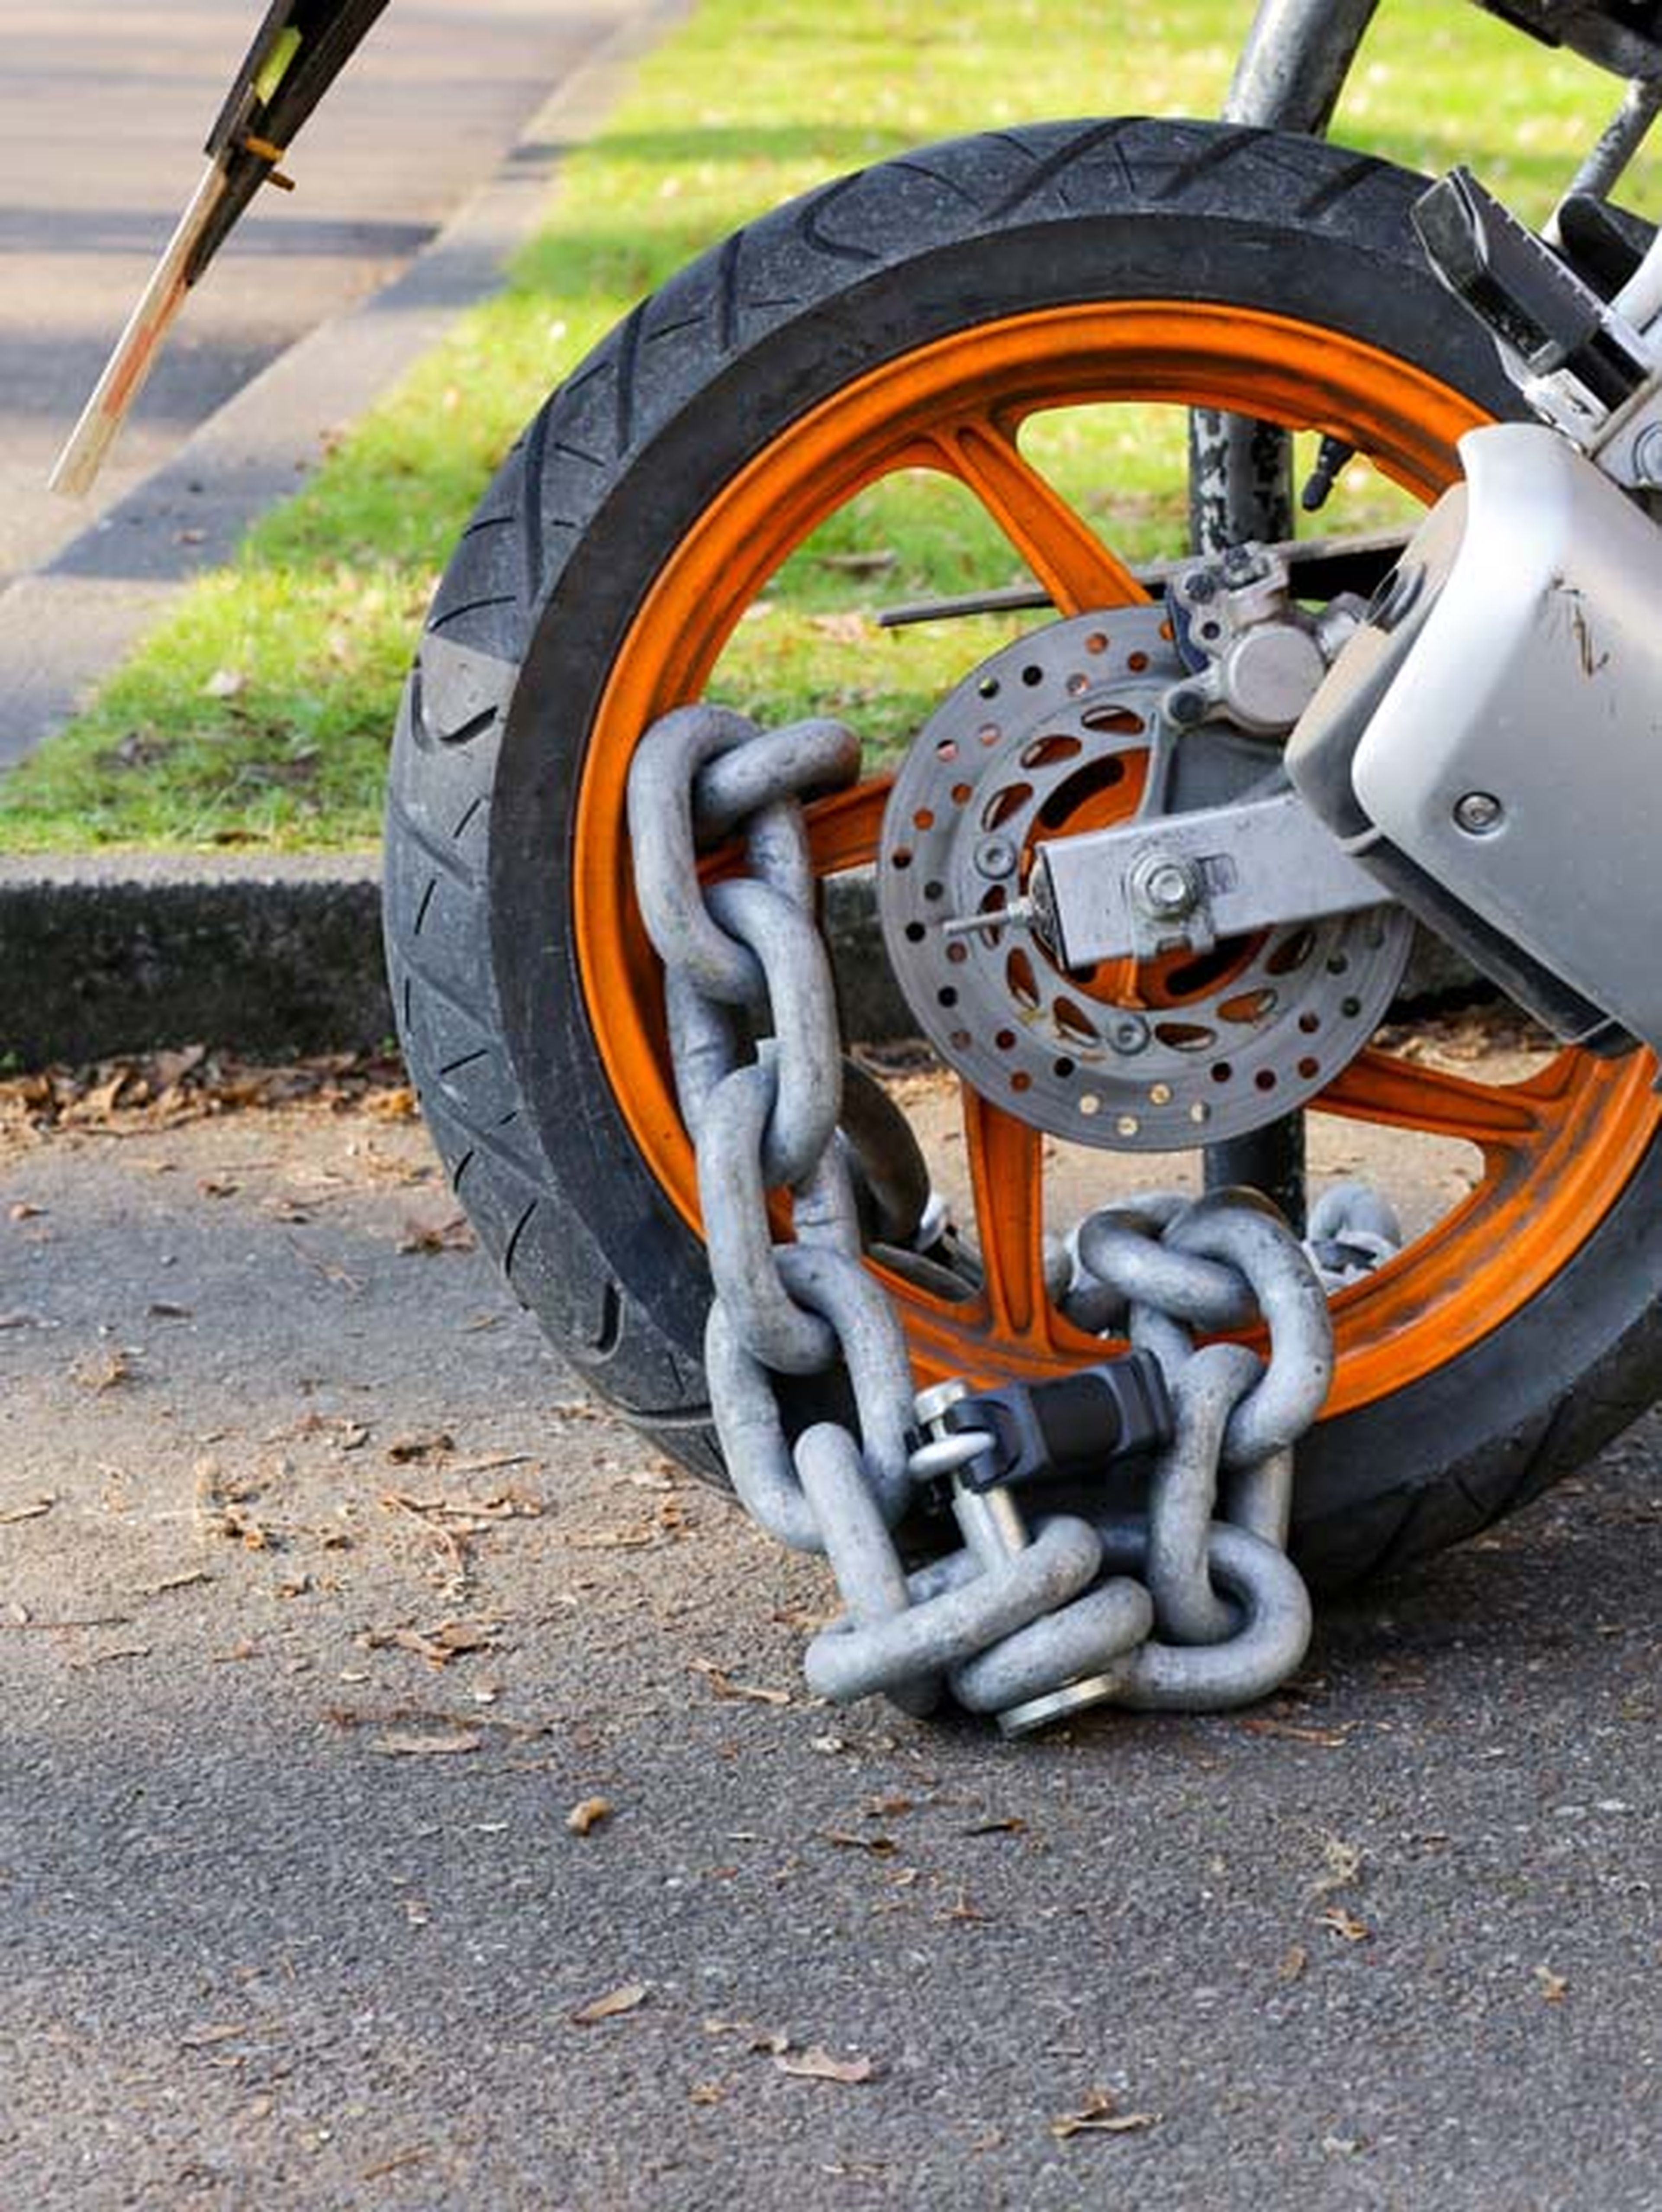 Cómo proteger tu moto frente a un robo - ¡Trucos eficaces!